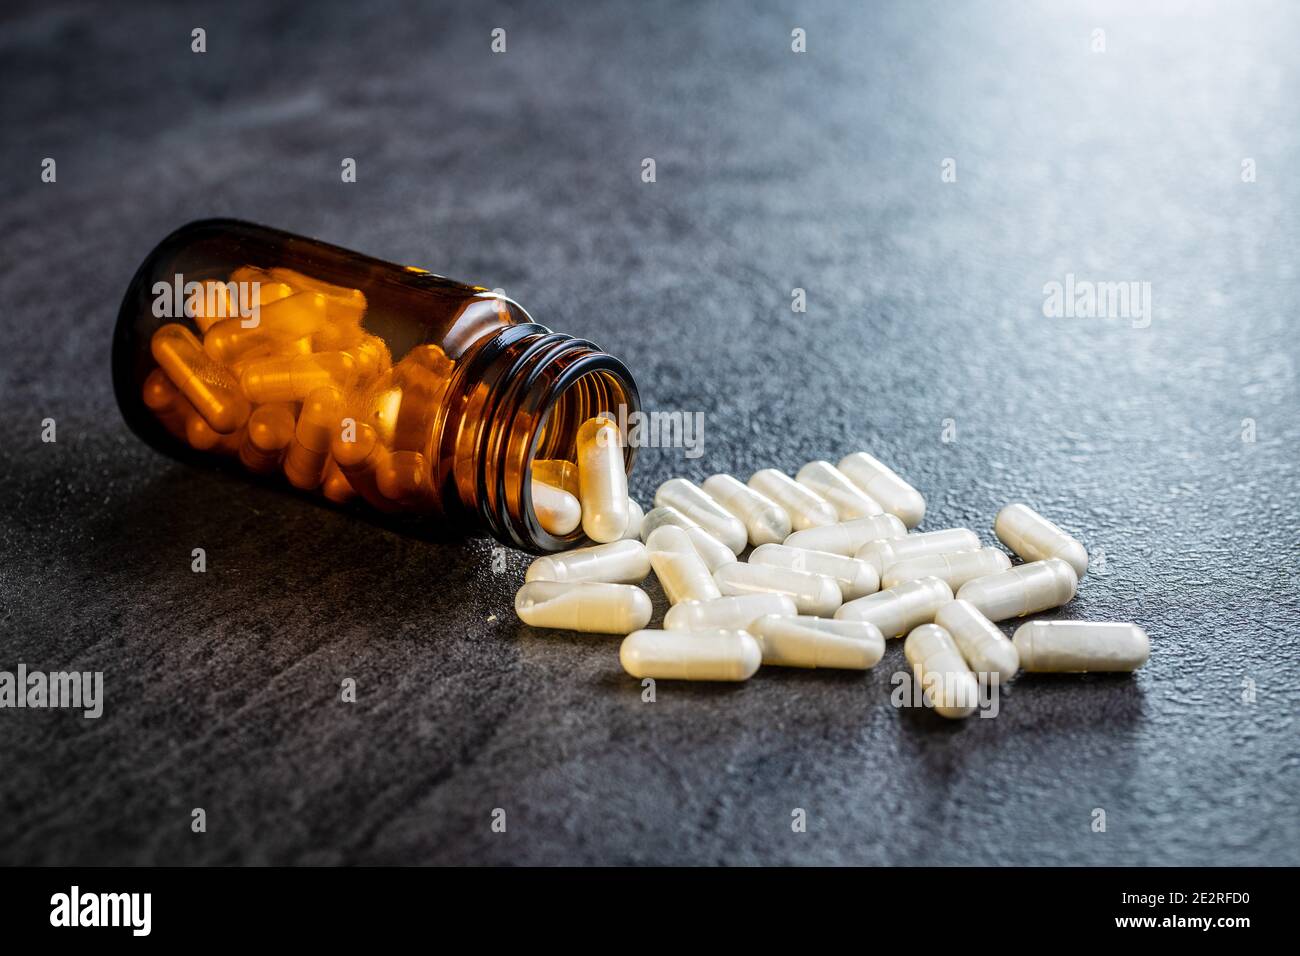 Pilules médicales blanches dans un contenant. Pilules, comprimés et capsules de médecine pharmaceutique dans un pot en verre. Banque D'Images